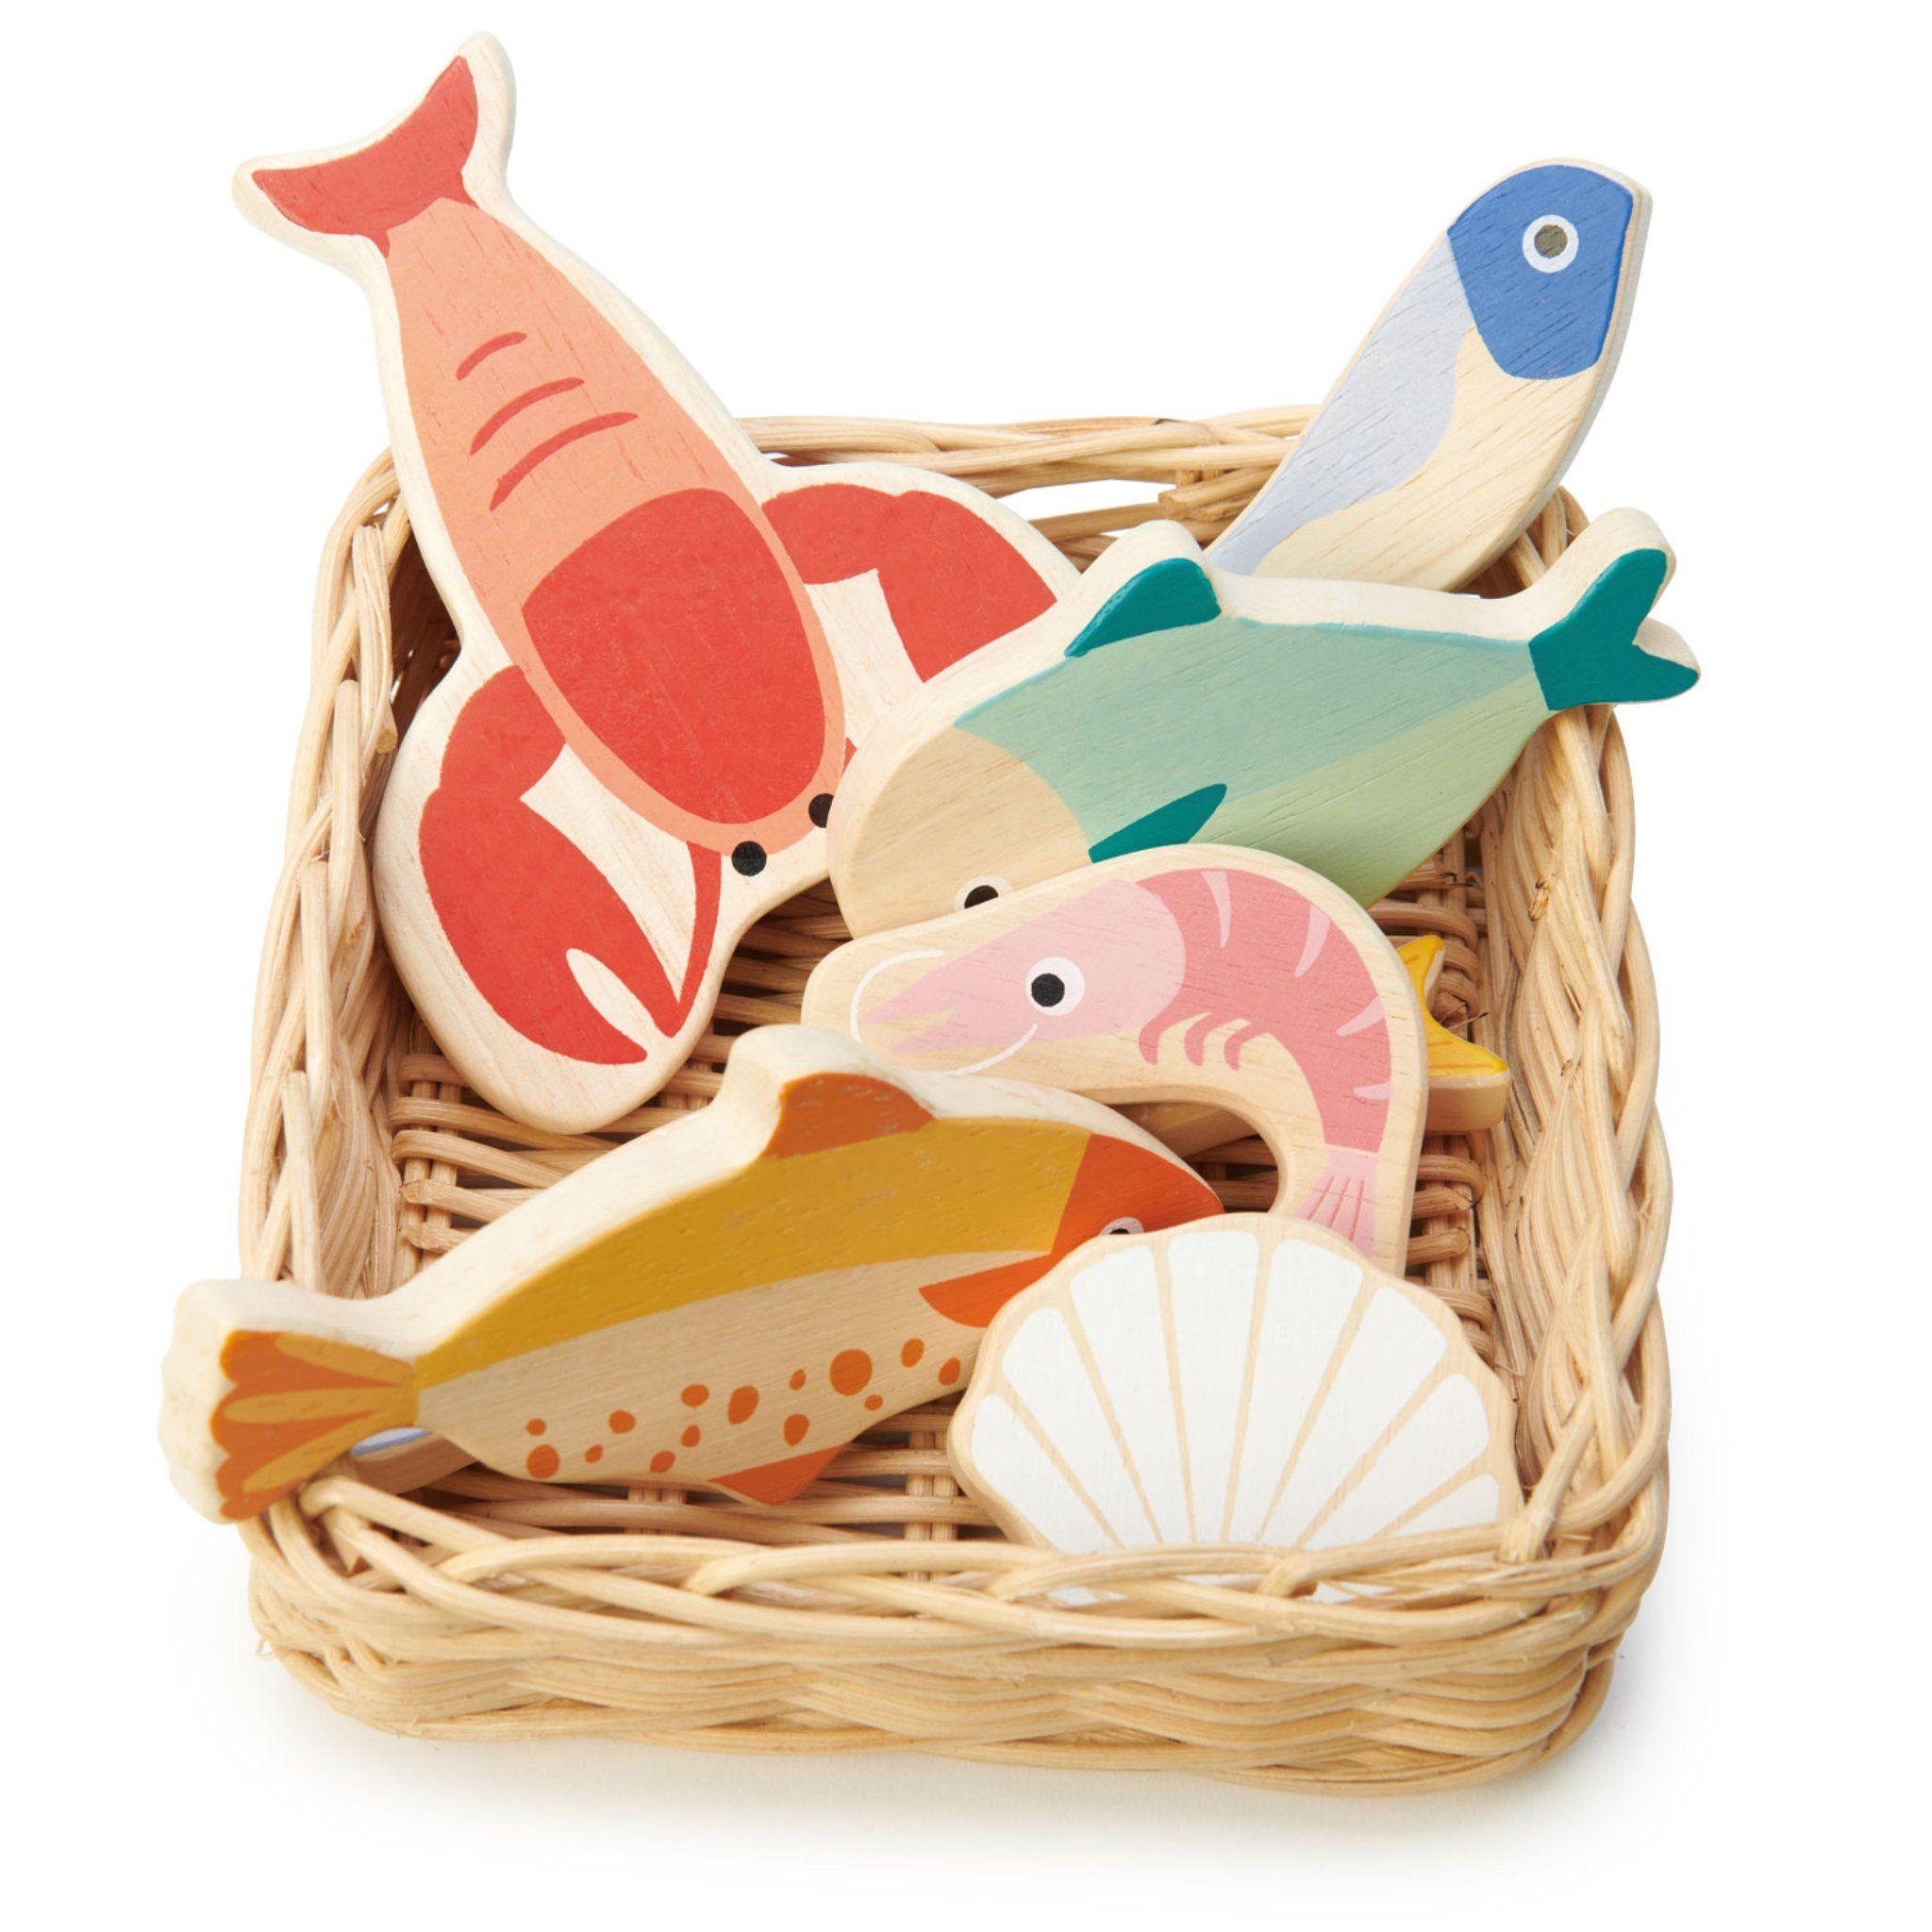 Tender Leaf Toys: wiklinowy koszyk z rybami i owocami morza Seafood Basket - Noski Noski